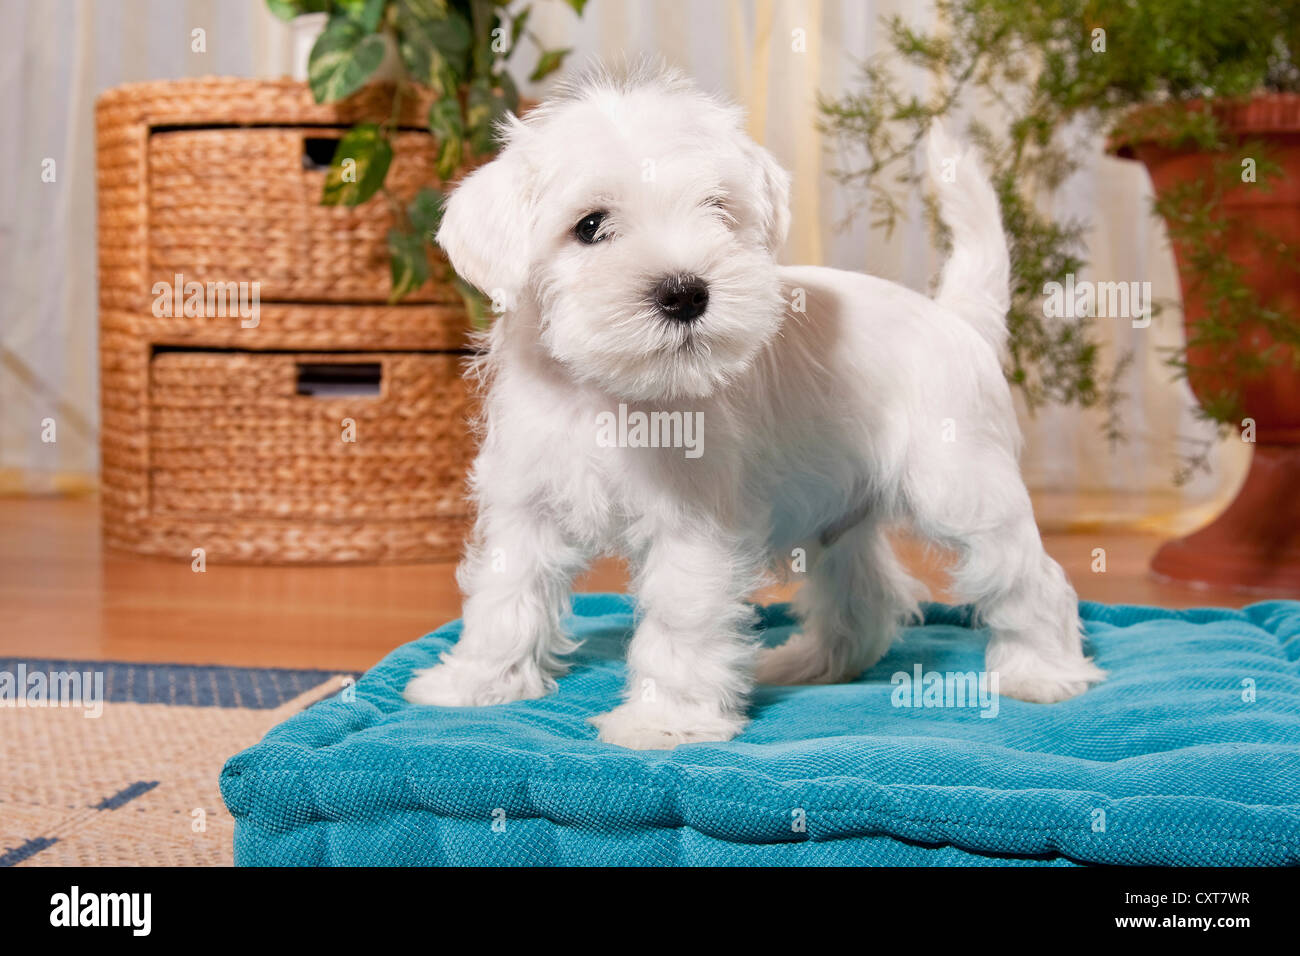 White Miniature Schnauzer Puppy On A Pillow Stock Photo Alamy